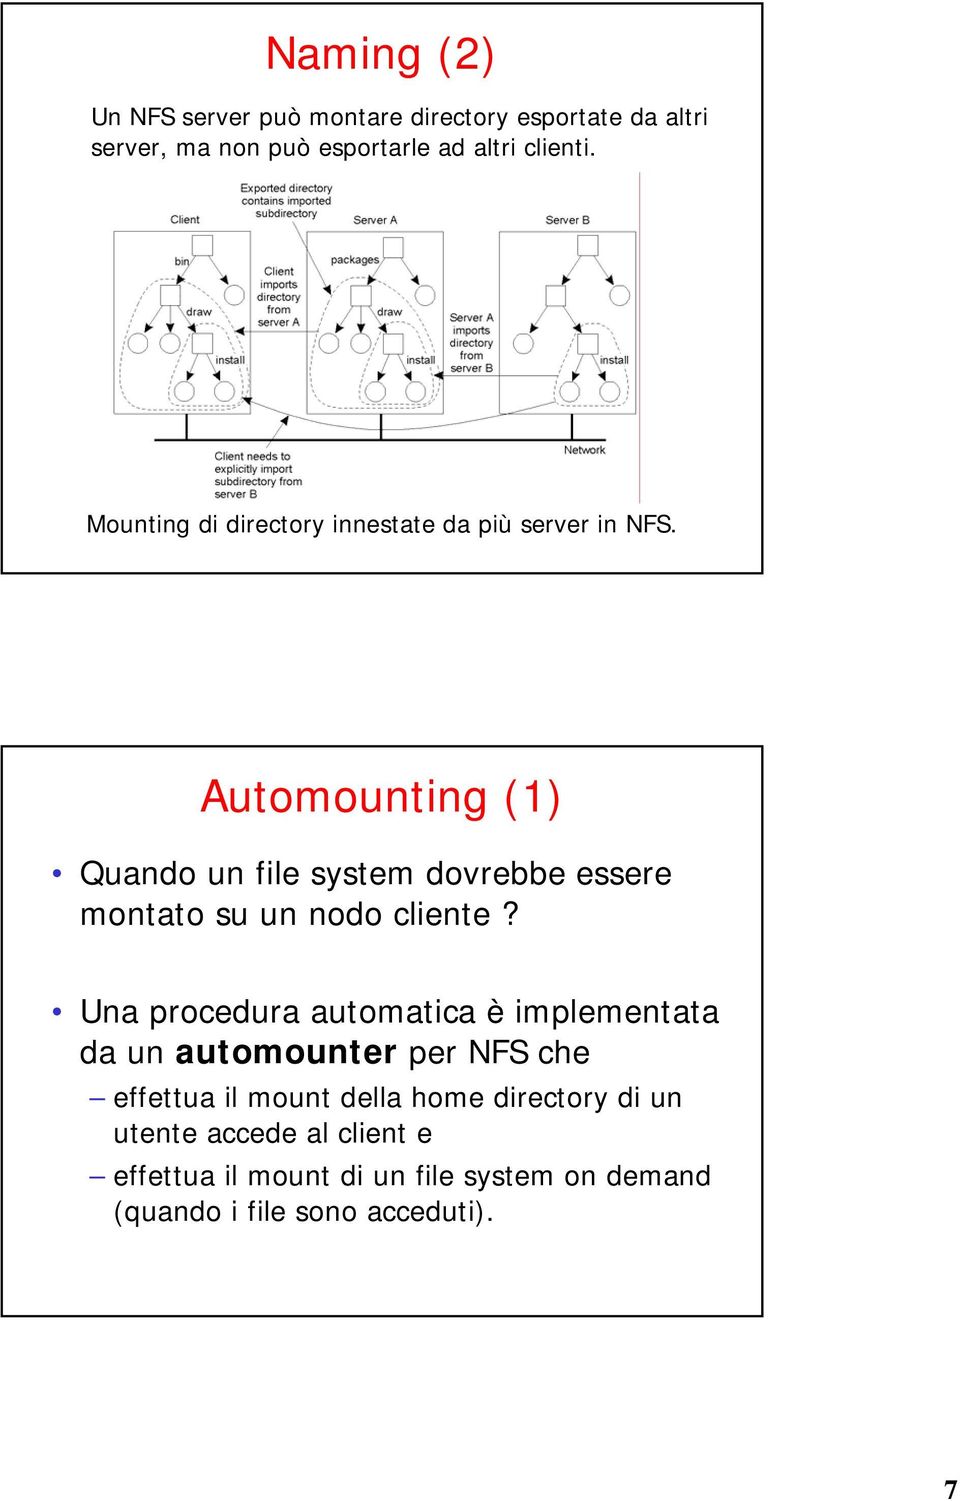 Automounting (1) Quando un file system dovrebbe essere montato su un nodo cliente?